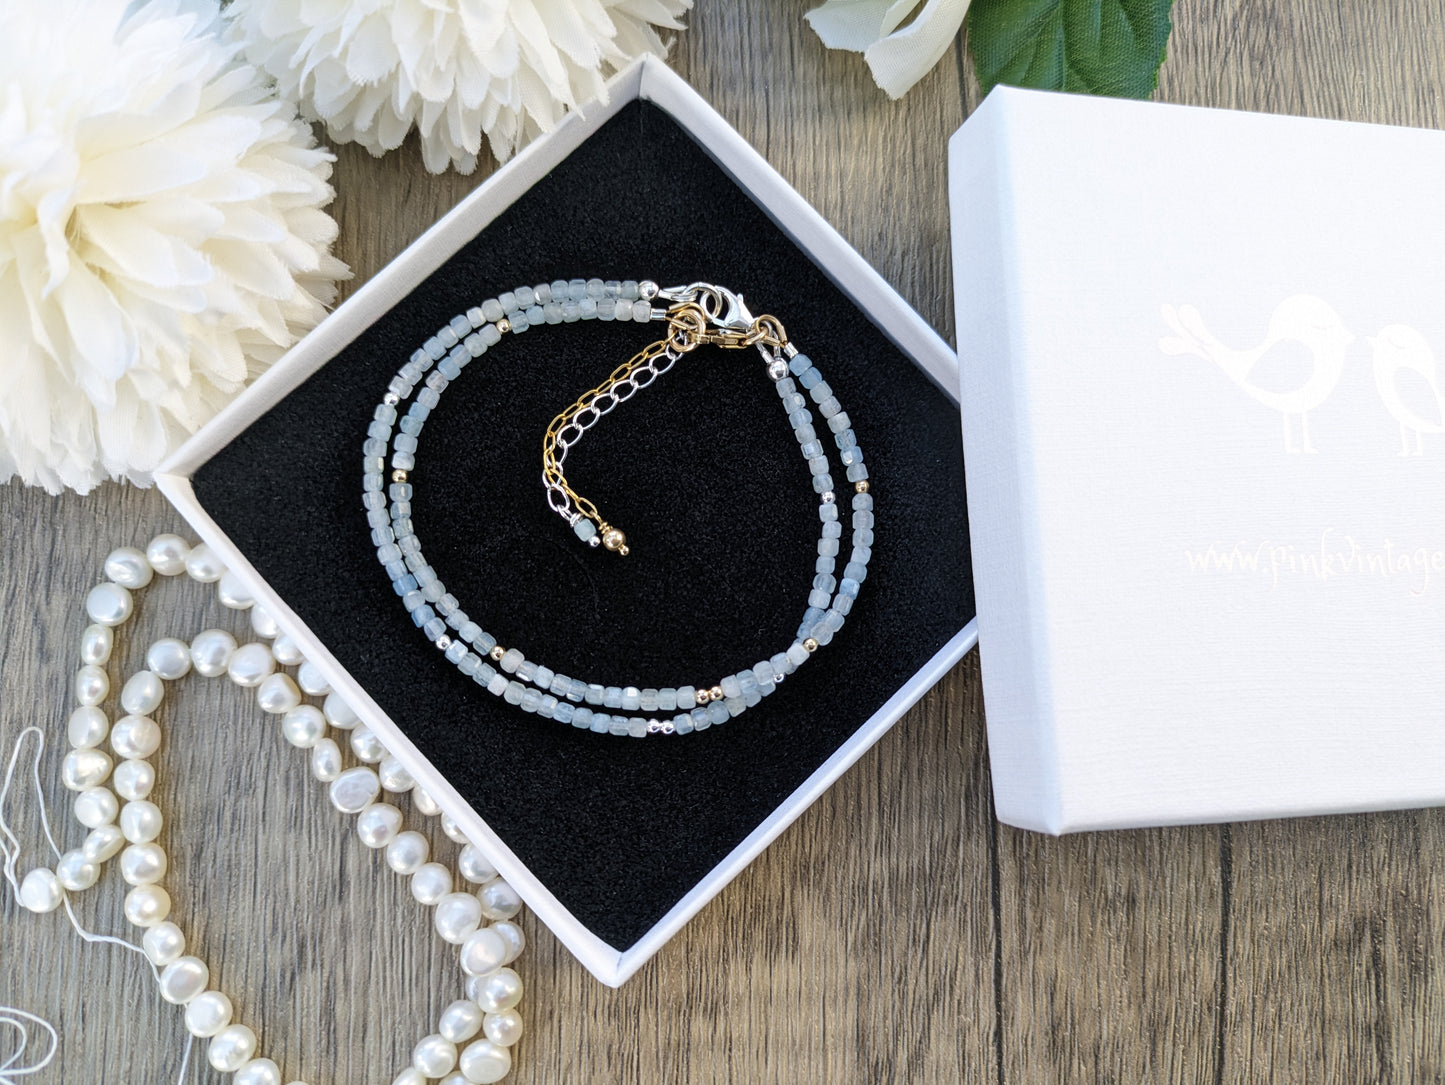 Skinny aquamarine bracelet in silver or gold.